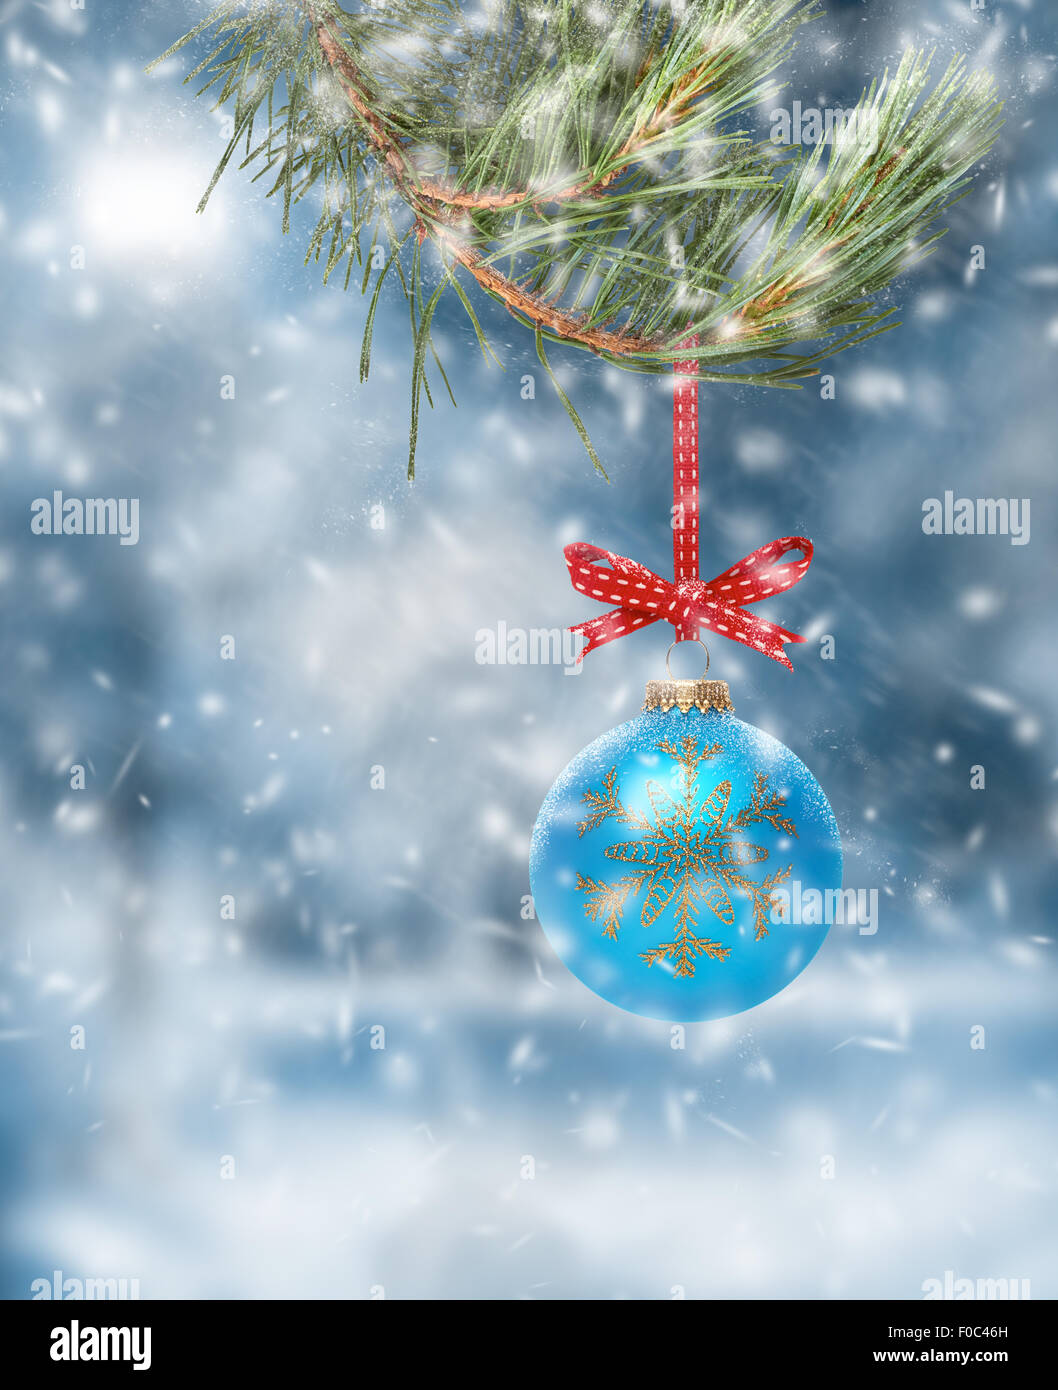 Décoration d'arbre de Noël traditionnel suspendu à une branche d'arbre avec une scène de la neige fond. Banque D'Images